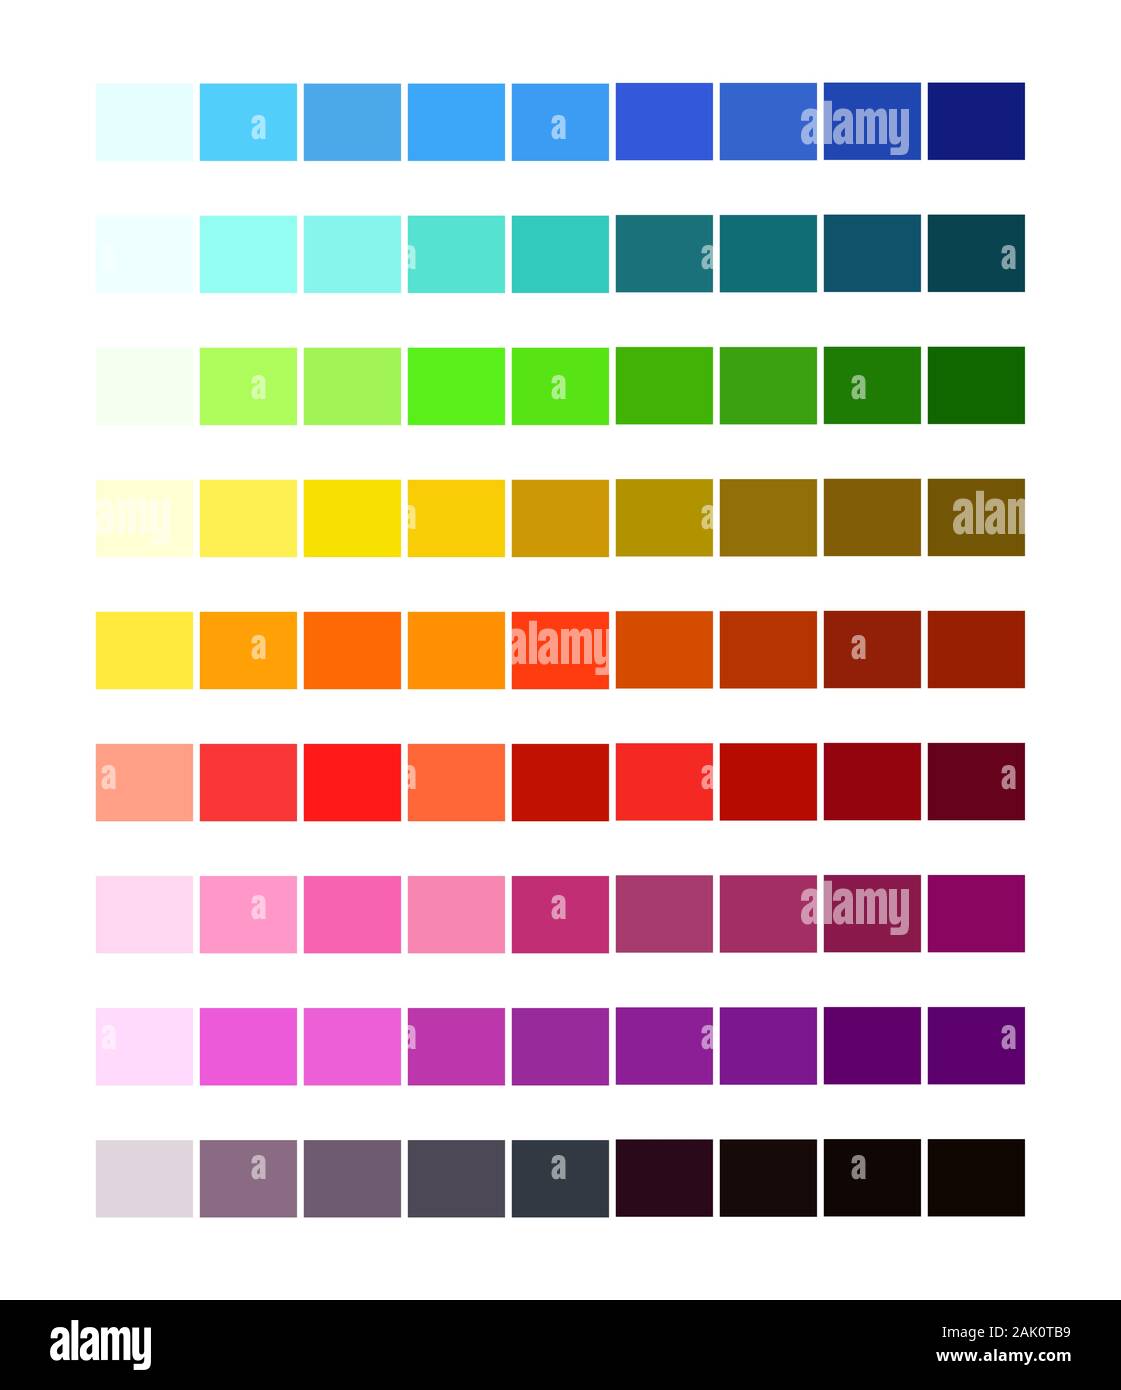 Les nuances de couleurs 50 nuances de grey sex